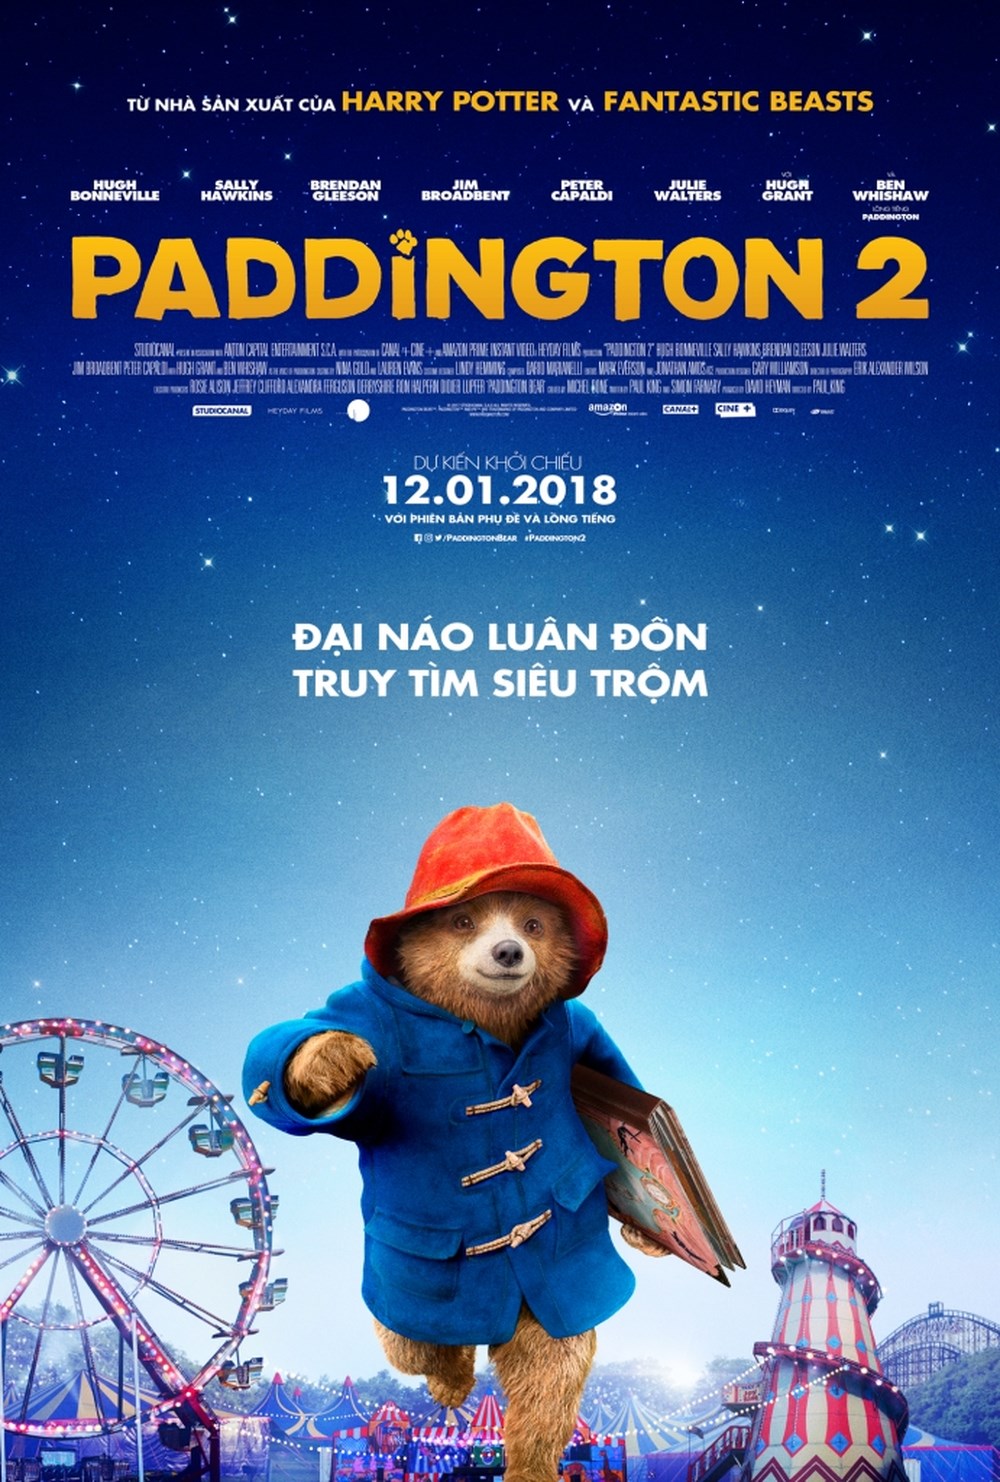 HD0814 - Paddington 2 2018 - Chú Gấu Paddington 2 2018